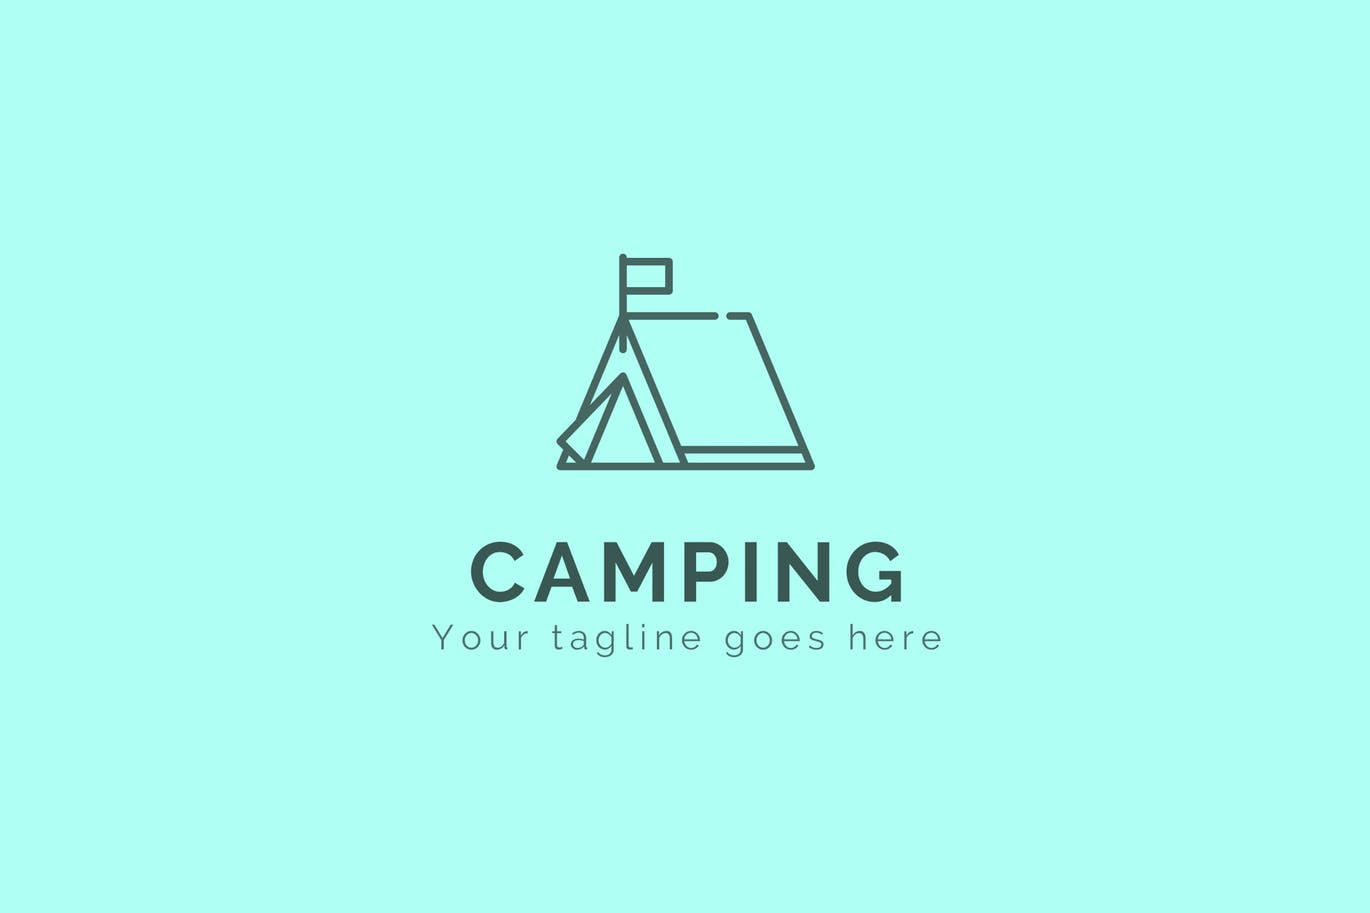 登山户外品牌露营图形Logo设计蚂蚁素材精选模板 Camping – Premium Logo Template插图